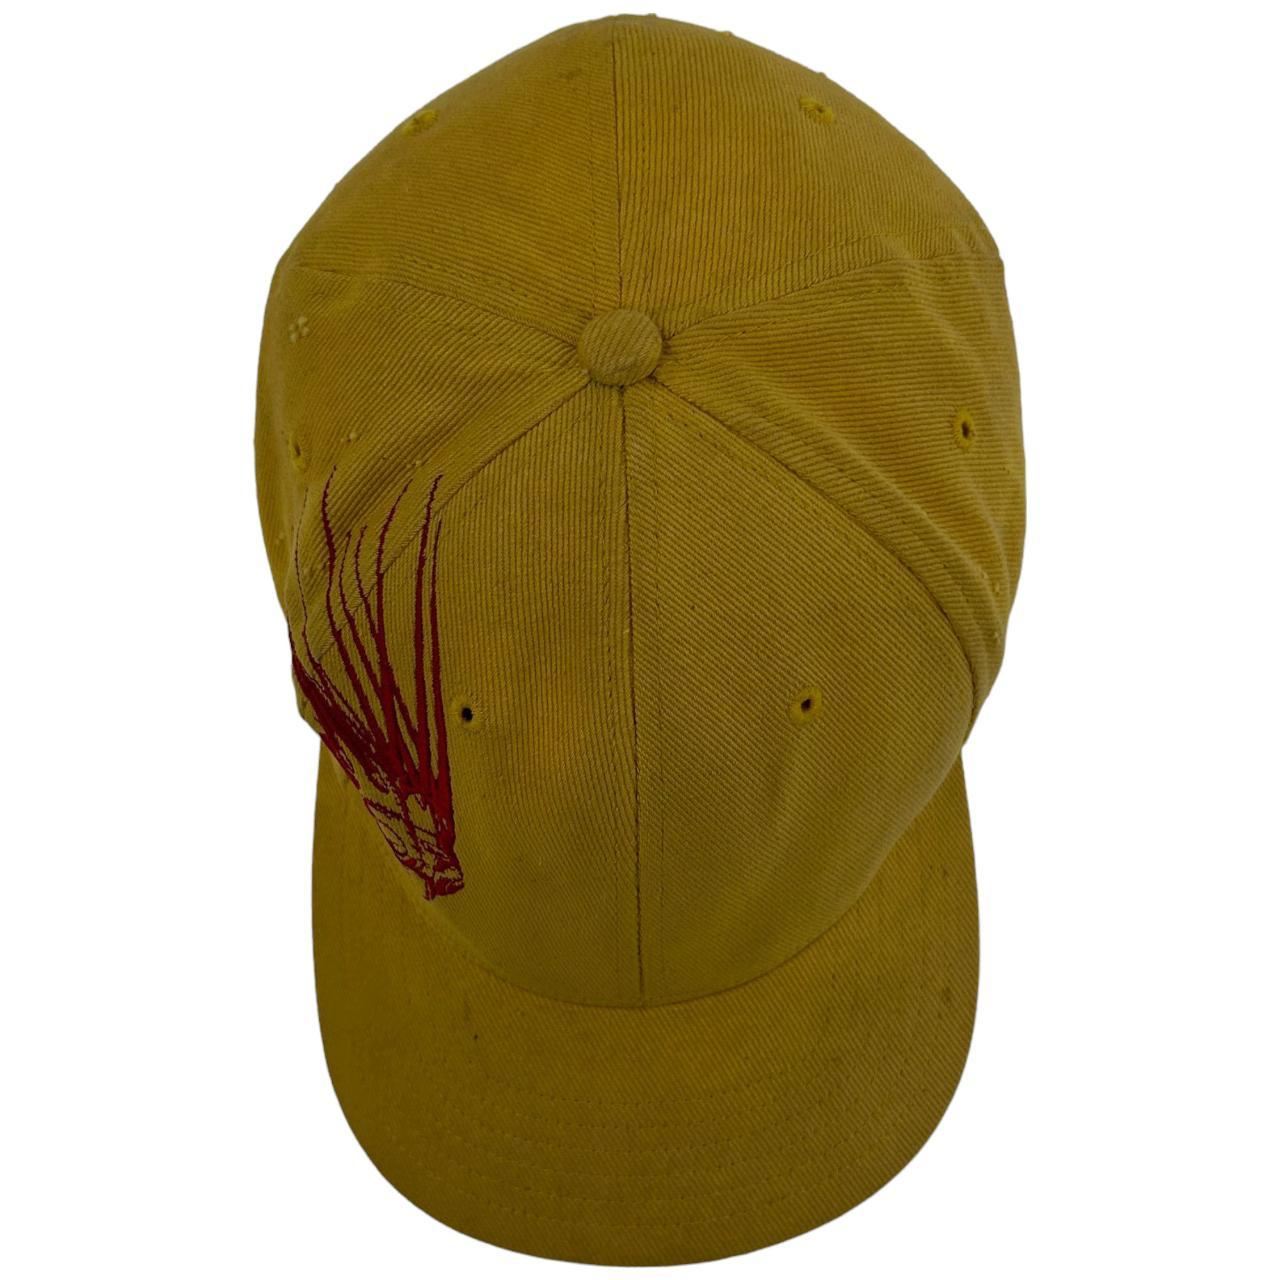 Vintage Oakley Medusa Hat, Description:, + Colour: